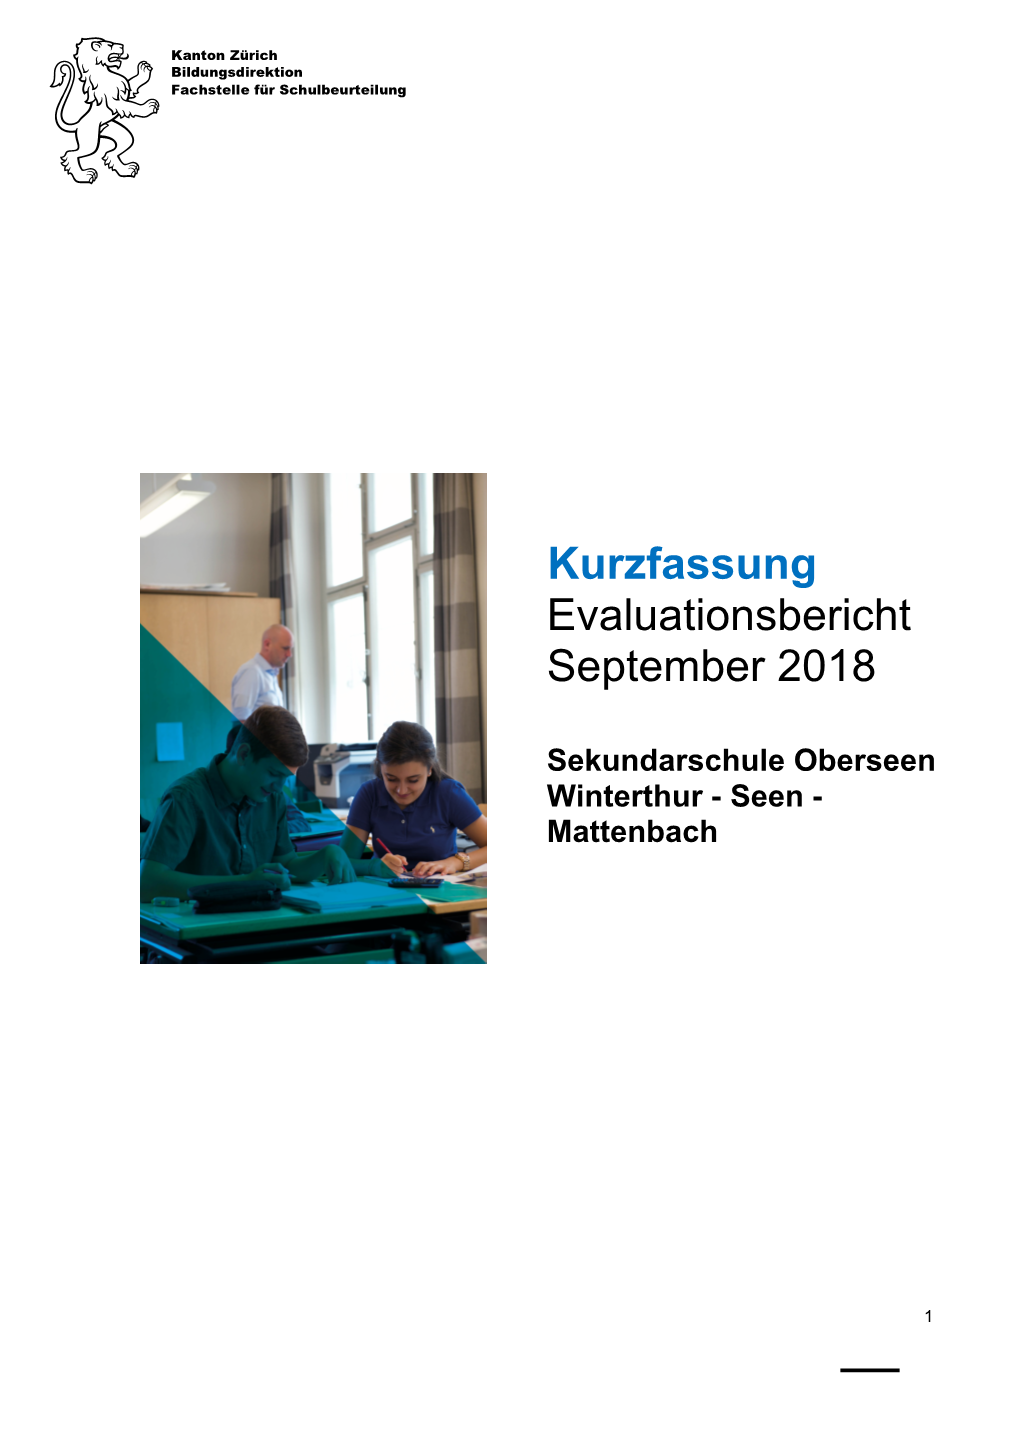 Kurzfassung-Evaluationsbericht-Sek Oberseen Winterthur